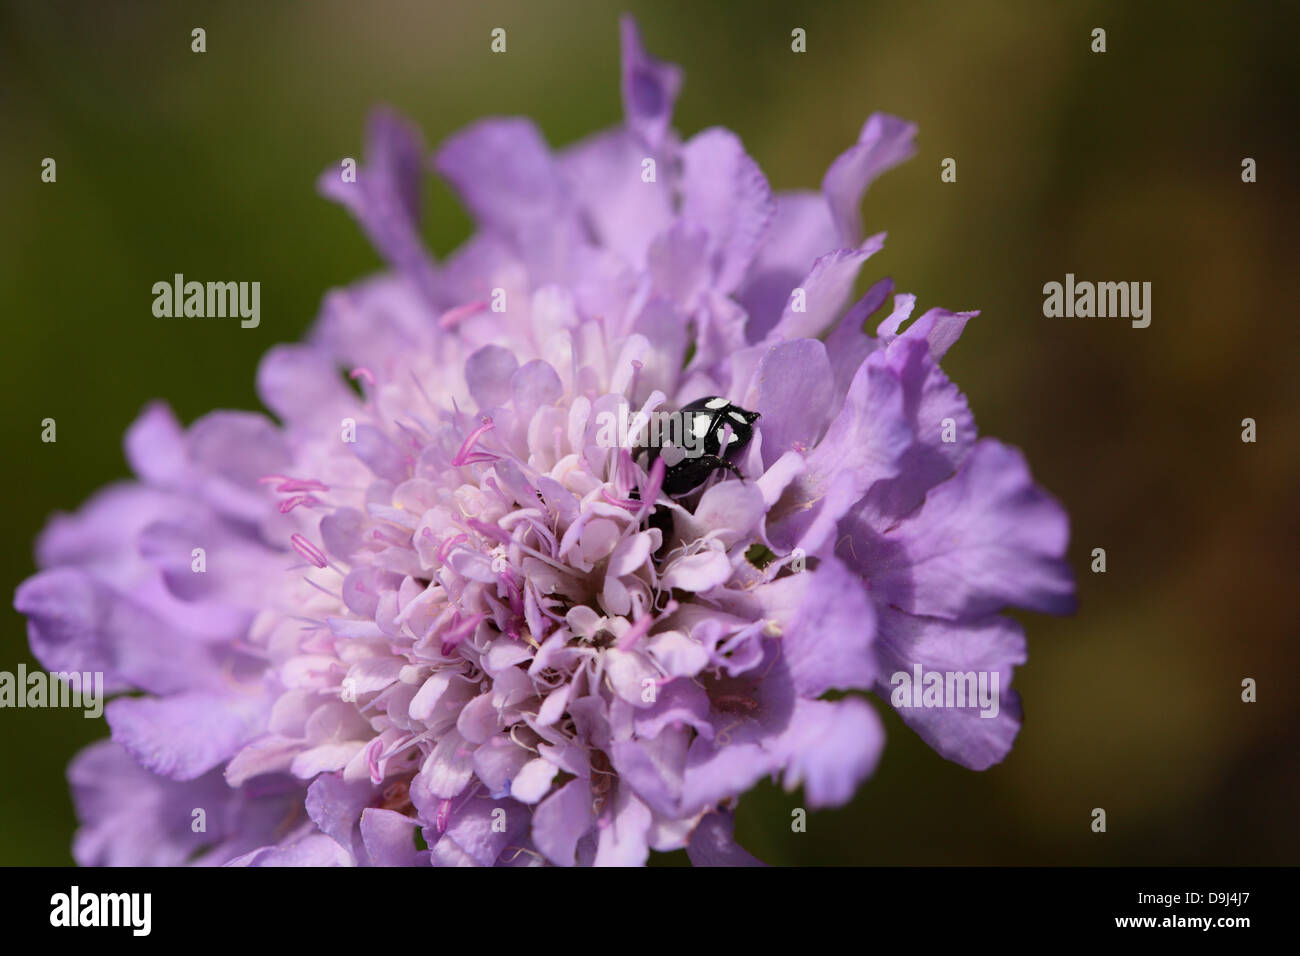 Schwarz / weiß Insekt wühlen in eine leichte lila Blume Stockfoto